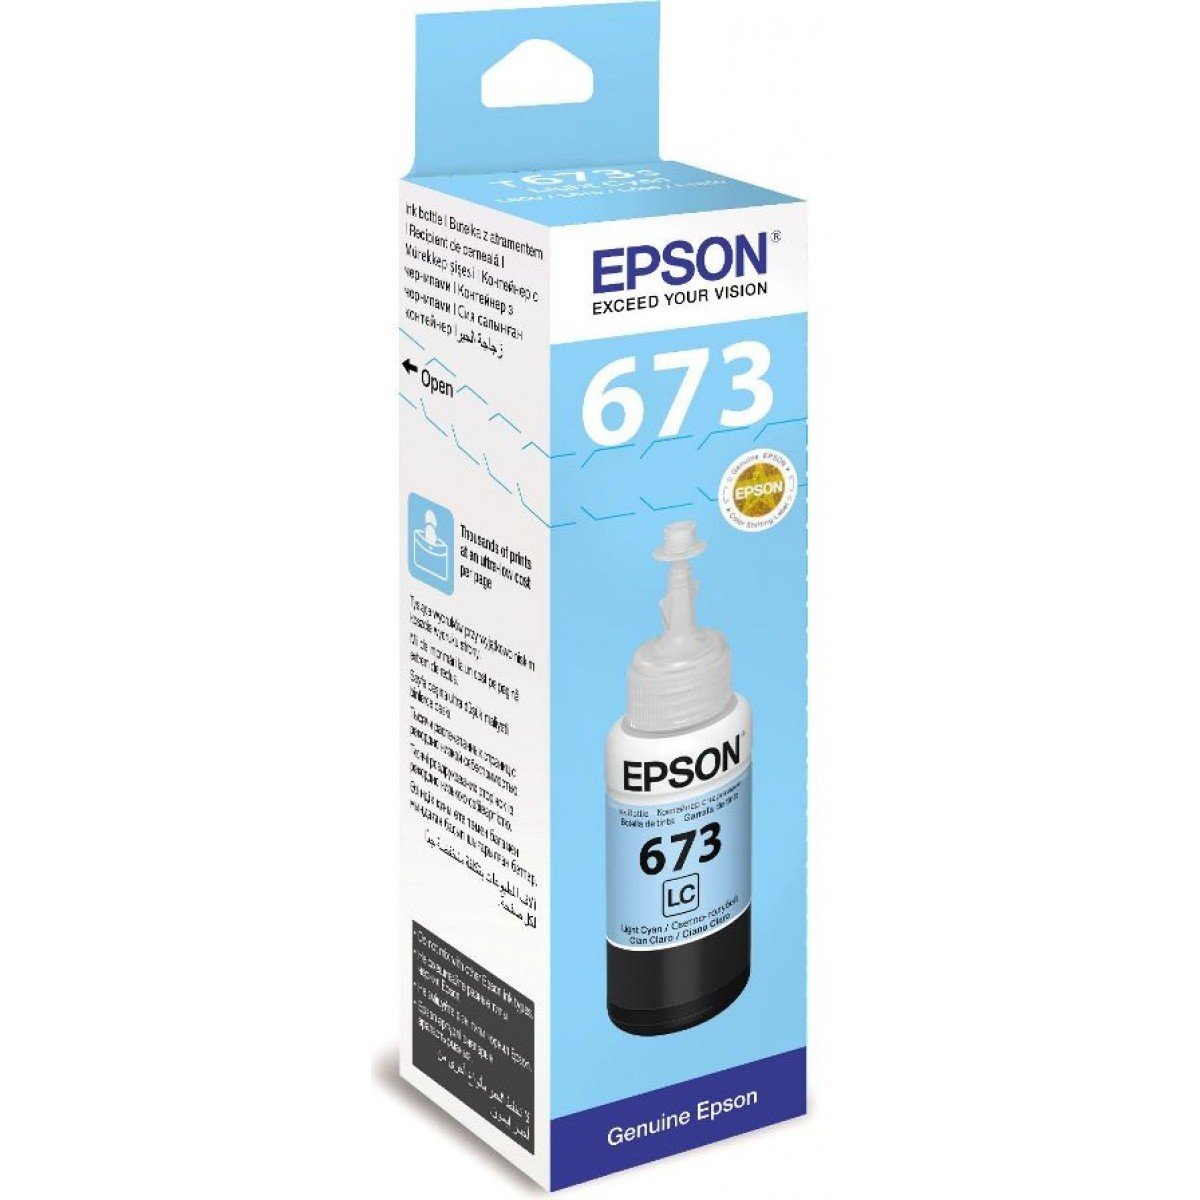 Epson Ink Bottle 673 Light Cyan For L800 L805 L810 L850 L1800 Rs550 Lt Online Store 8160